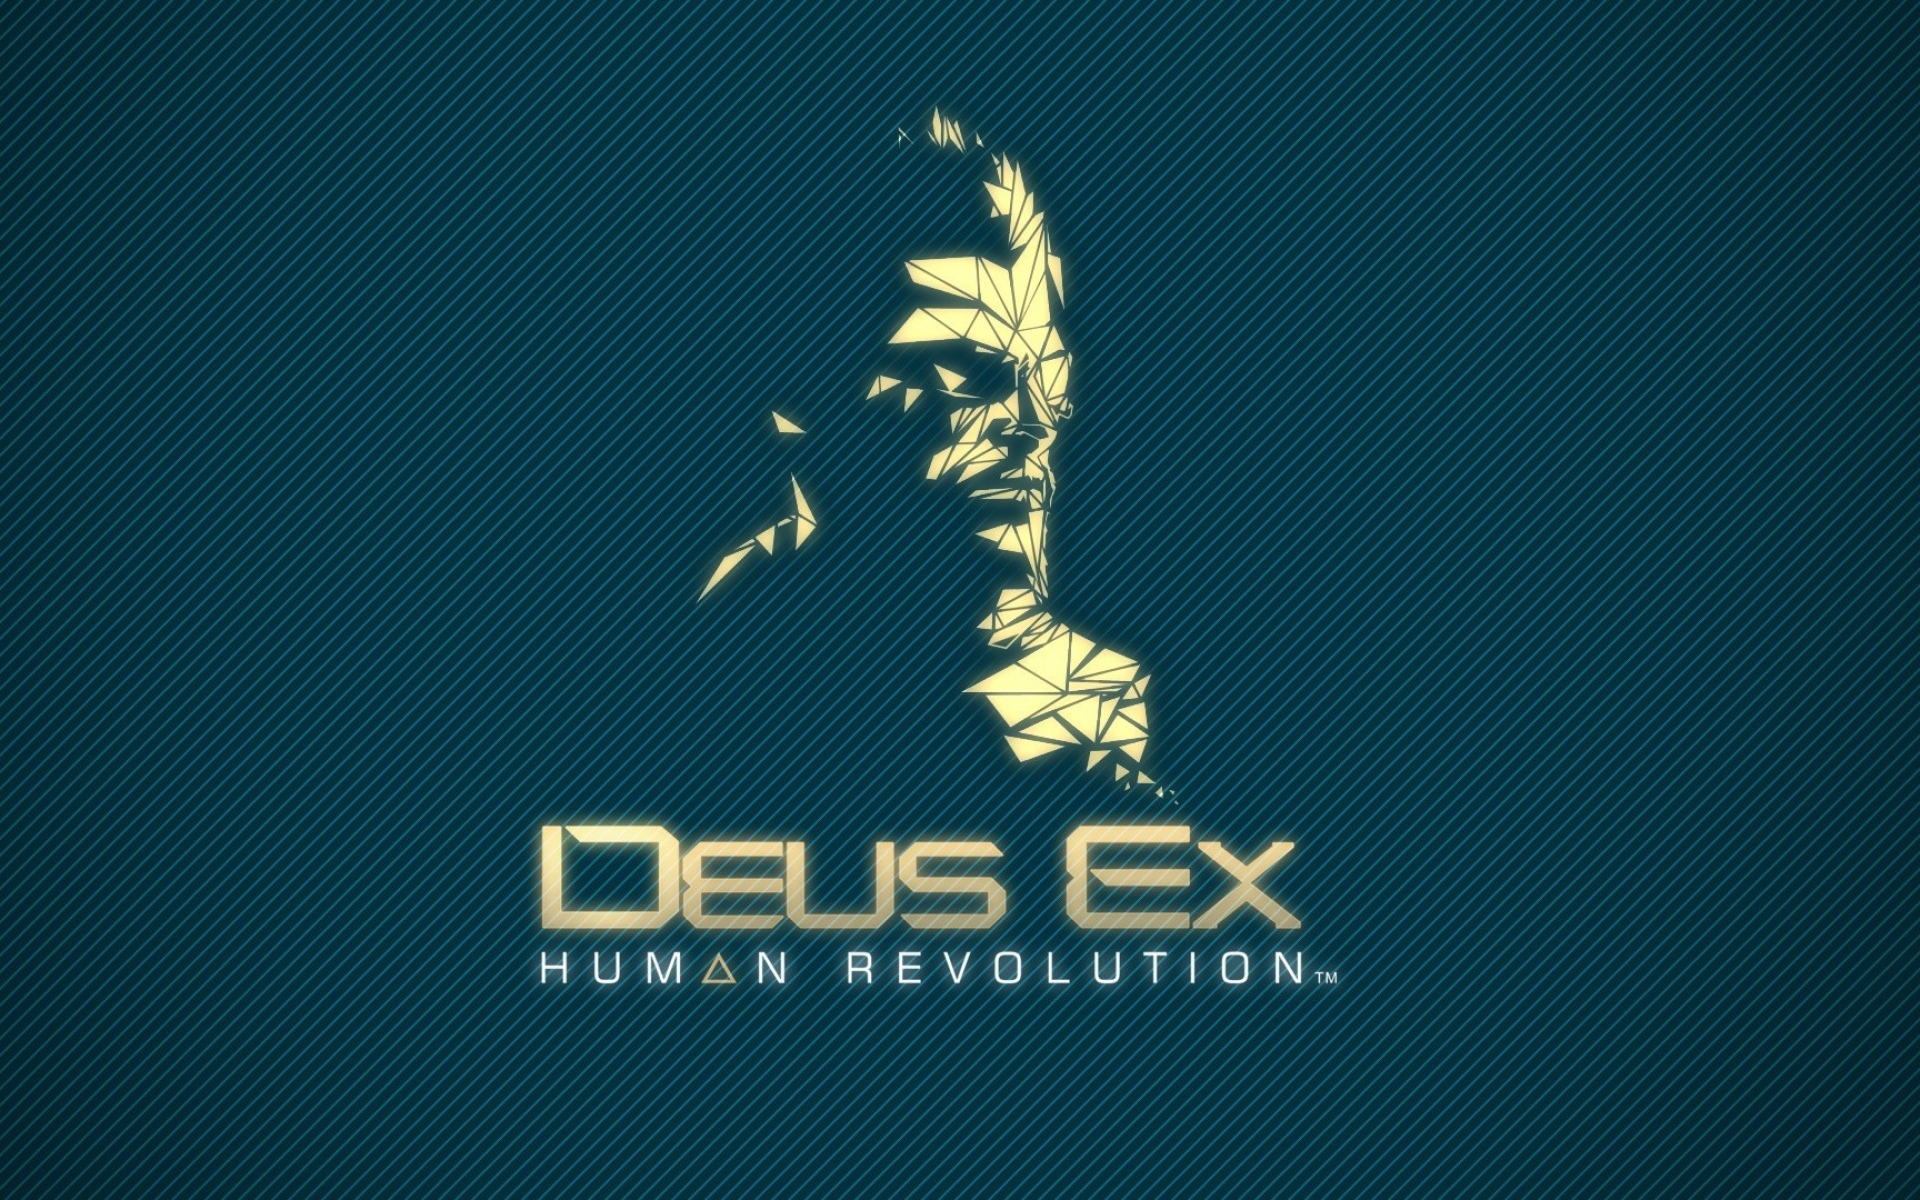 Картинки Deus ex human revolution, adam jensen, фон, шрифт, имя фото и обои на рабочий стол